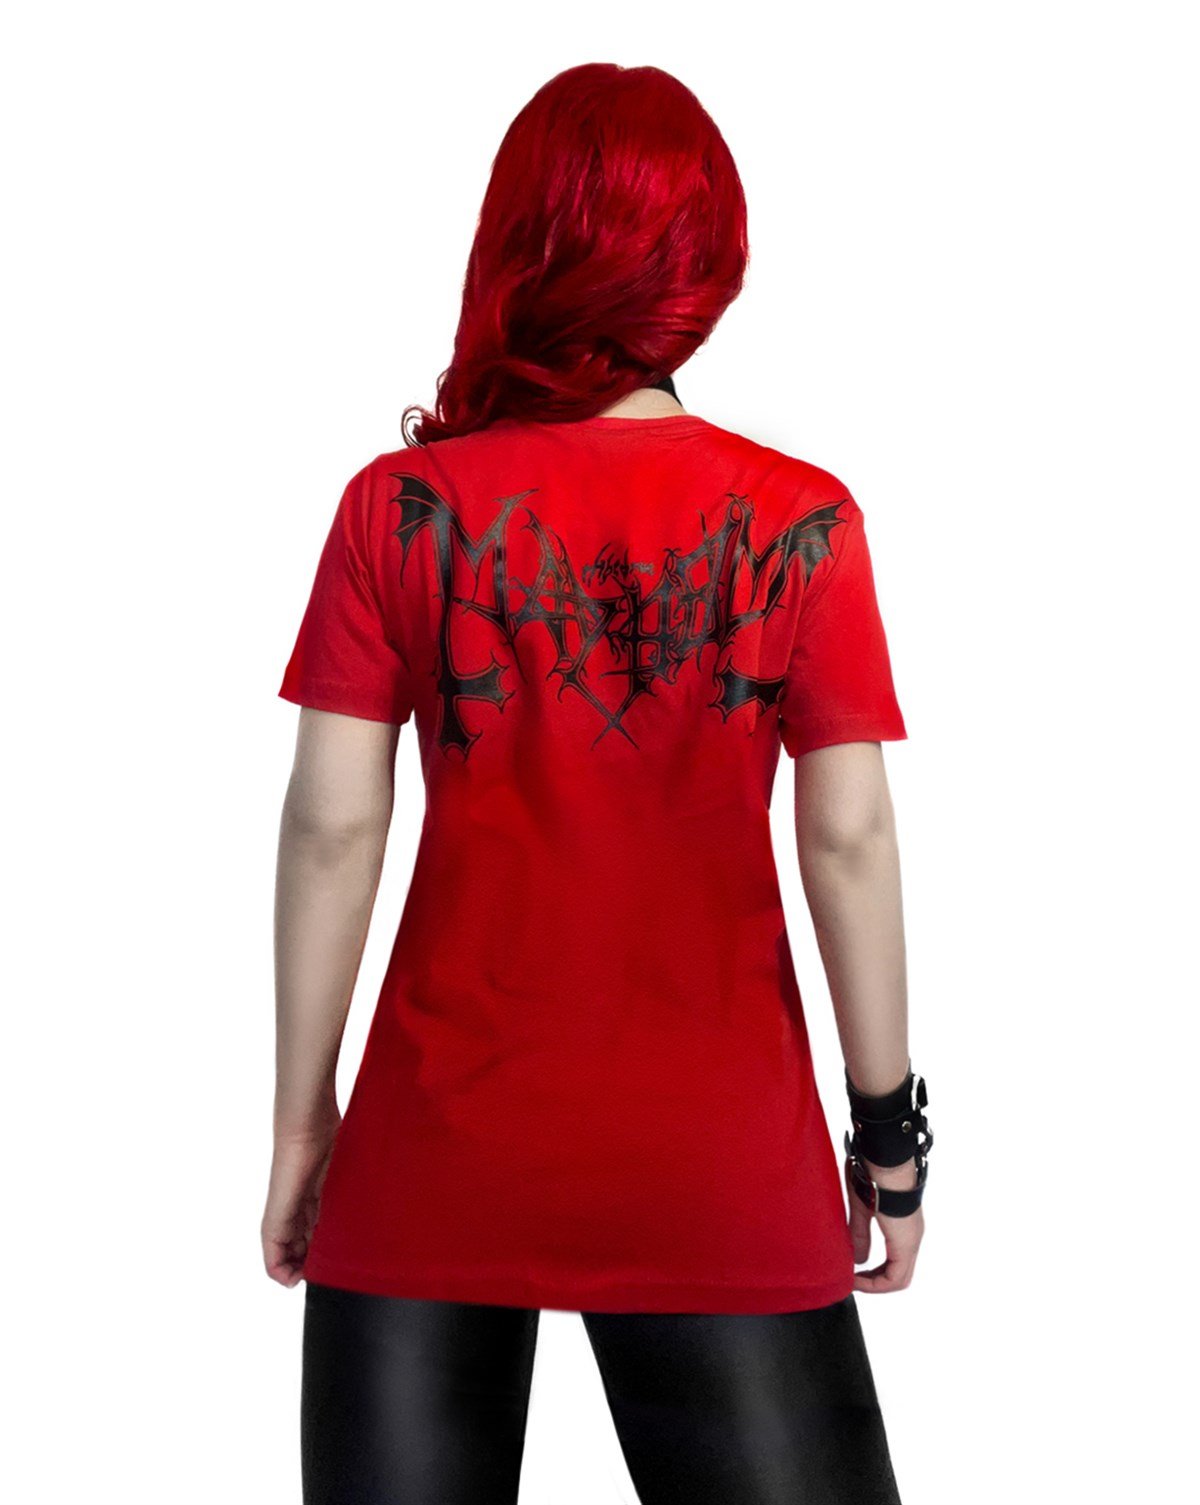 Mayhem Deathcrush T-shirt 398335